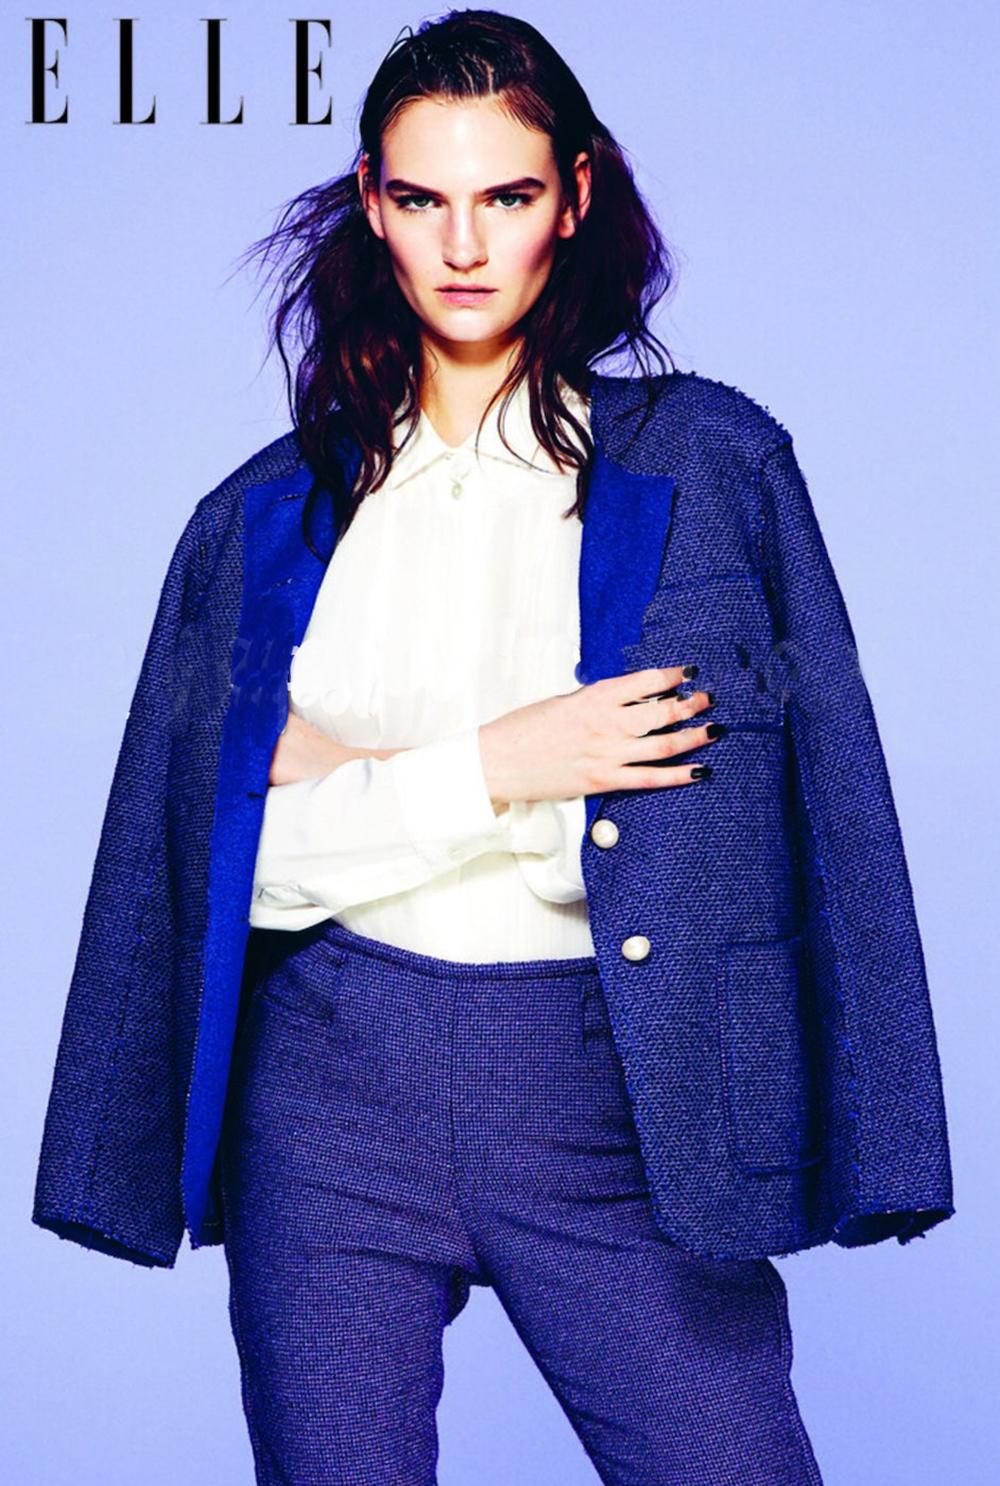 Veste en tweed violet et bleu Chanel issue du défilé de la collection printemps 2013 de Karl Lagerfeld.
- Boutons perlés avec logo CC
- doublure en tweed bleu
Taille 44 FR. État impeccable.